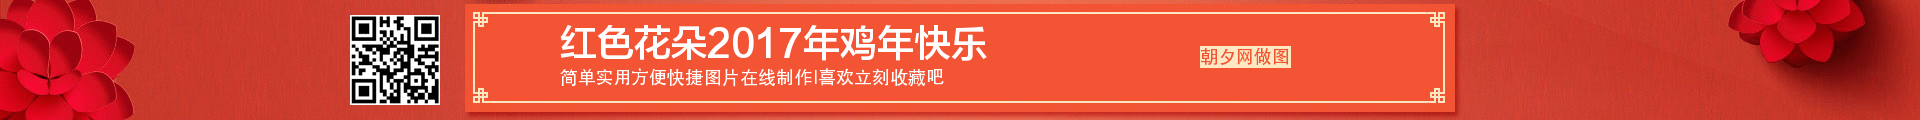 两侧红色花朵中间节日框子banner 演示效果